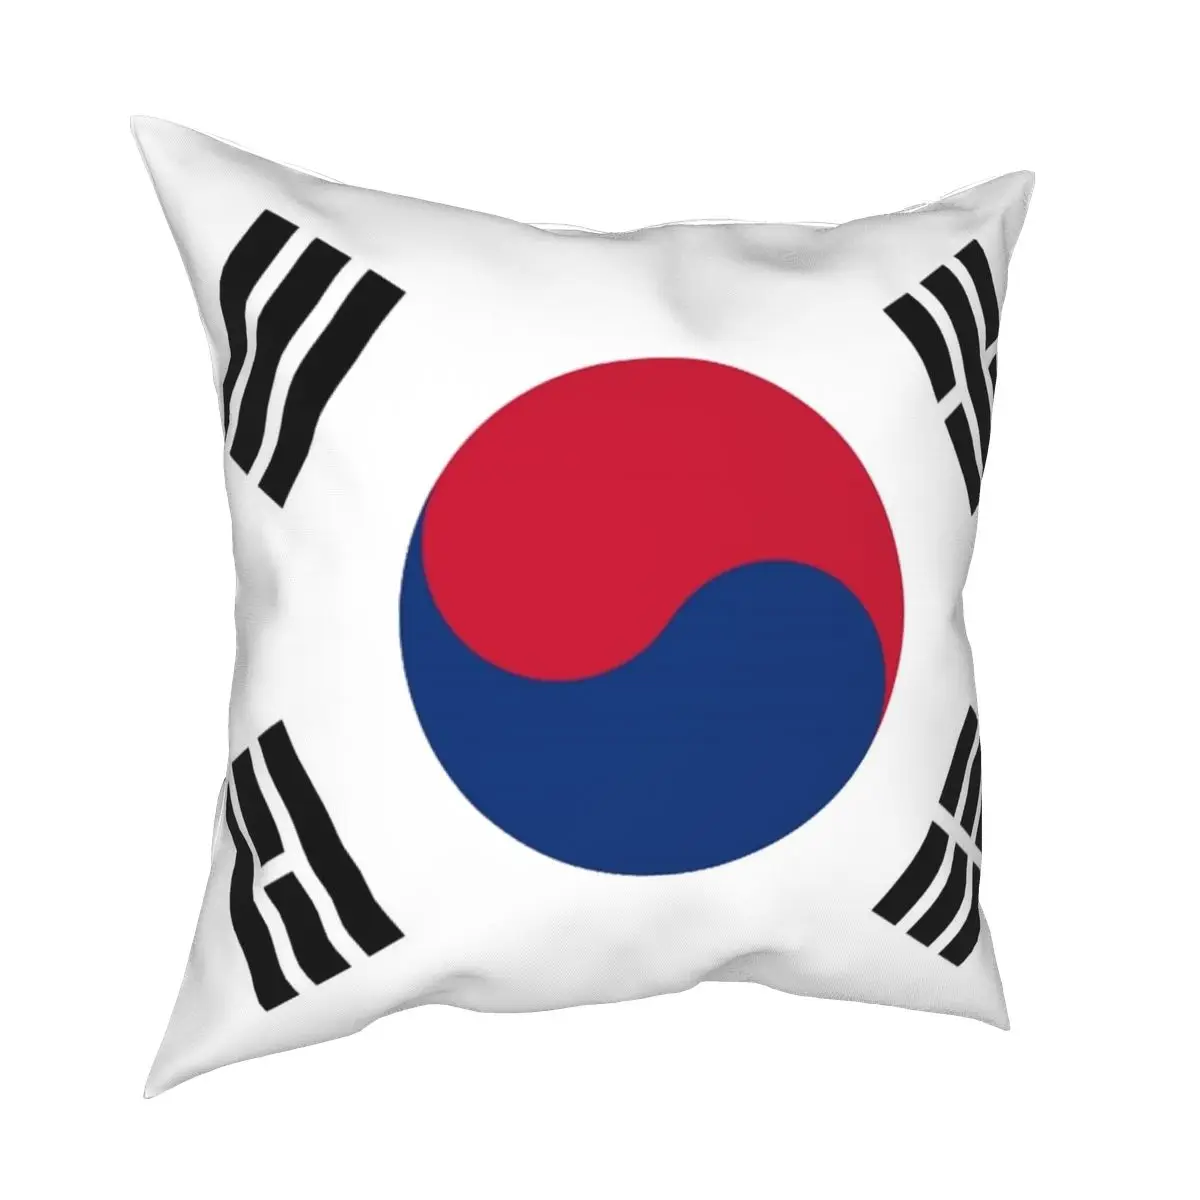 

Наволочка с принтом флага Южной Кореи, полиэстеровый декоративный чехол на молнии для домашней подушки, оптовая продажа